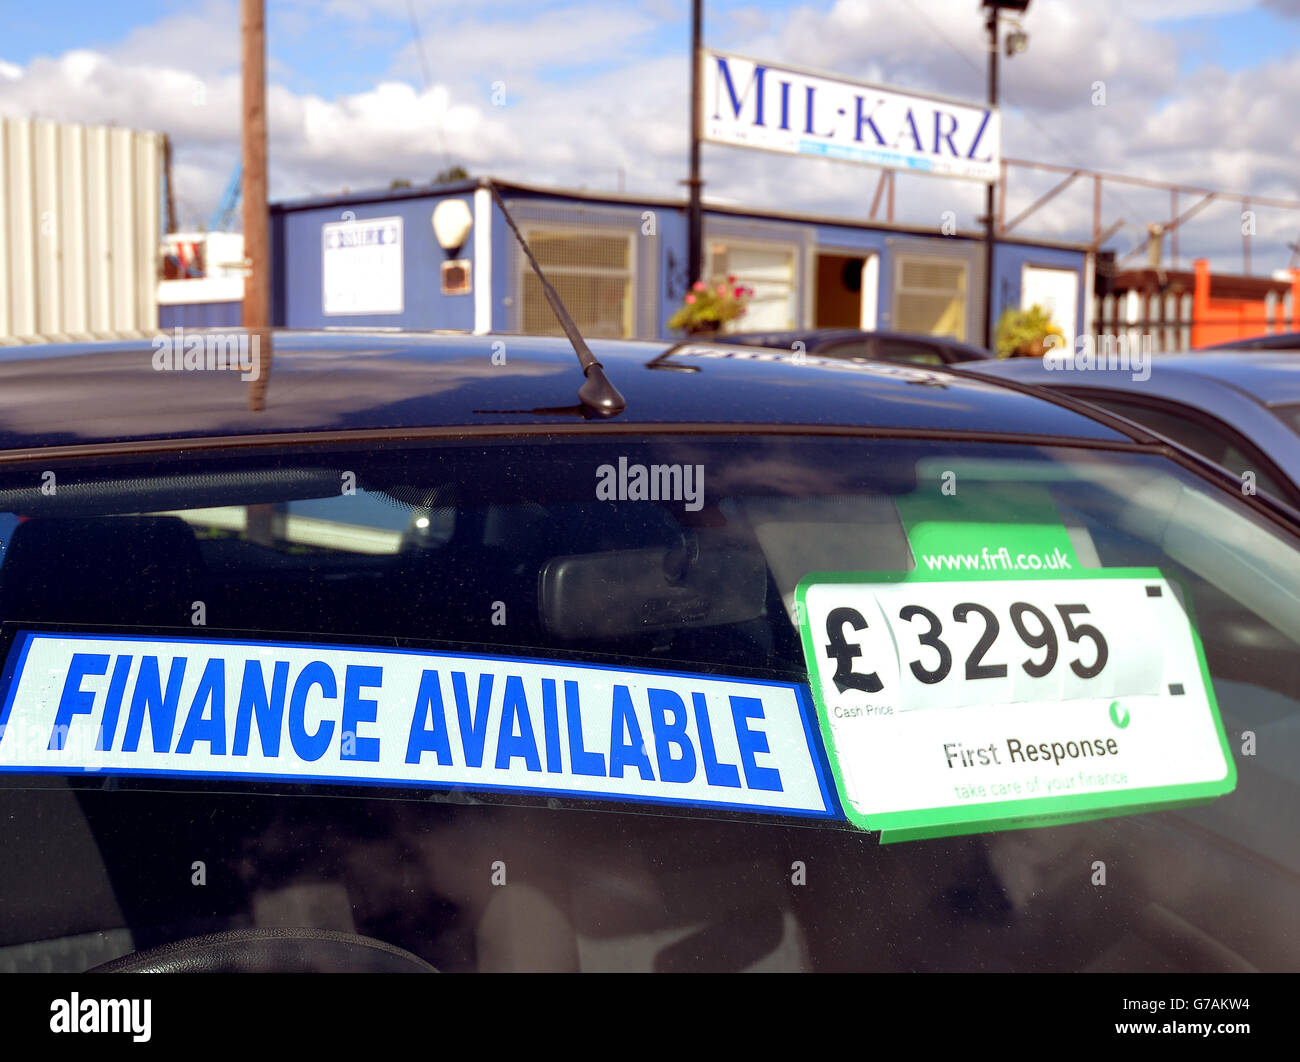 Vista generale della segnaletica presso la vendita di auto usate MIL Karz ad Aveley, Essex Foto Stock